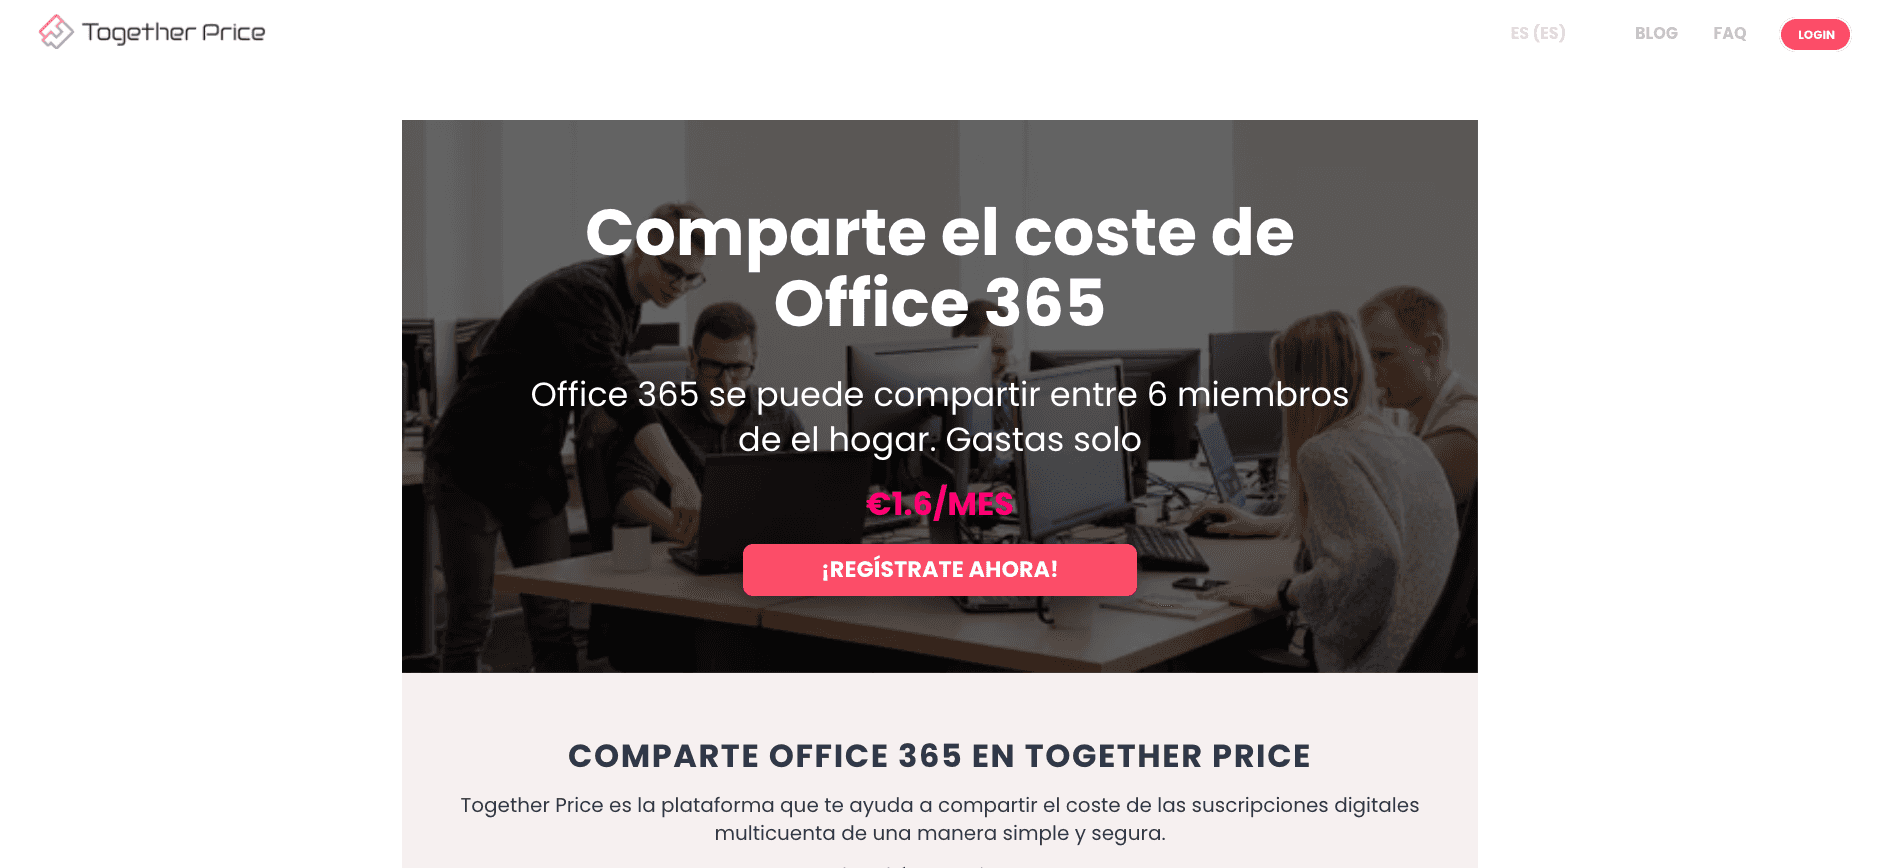 Comparte el coste de Office 365